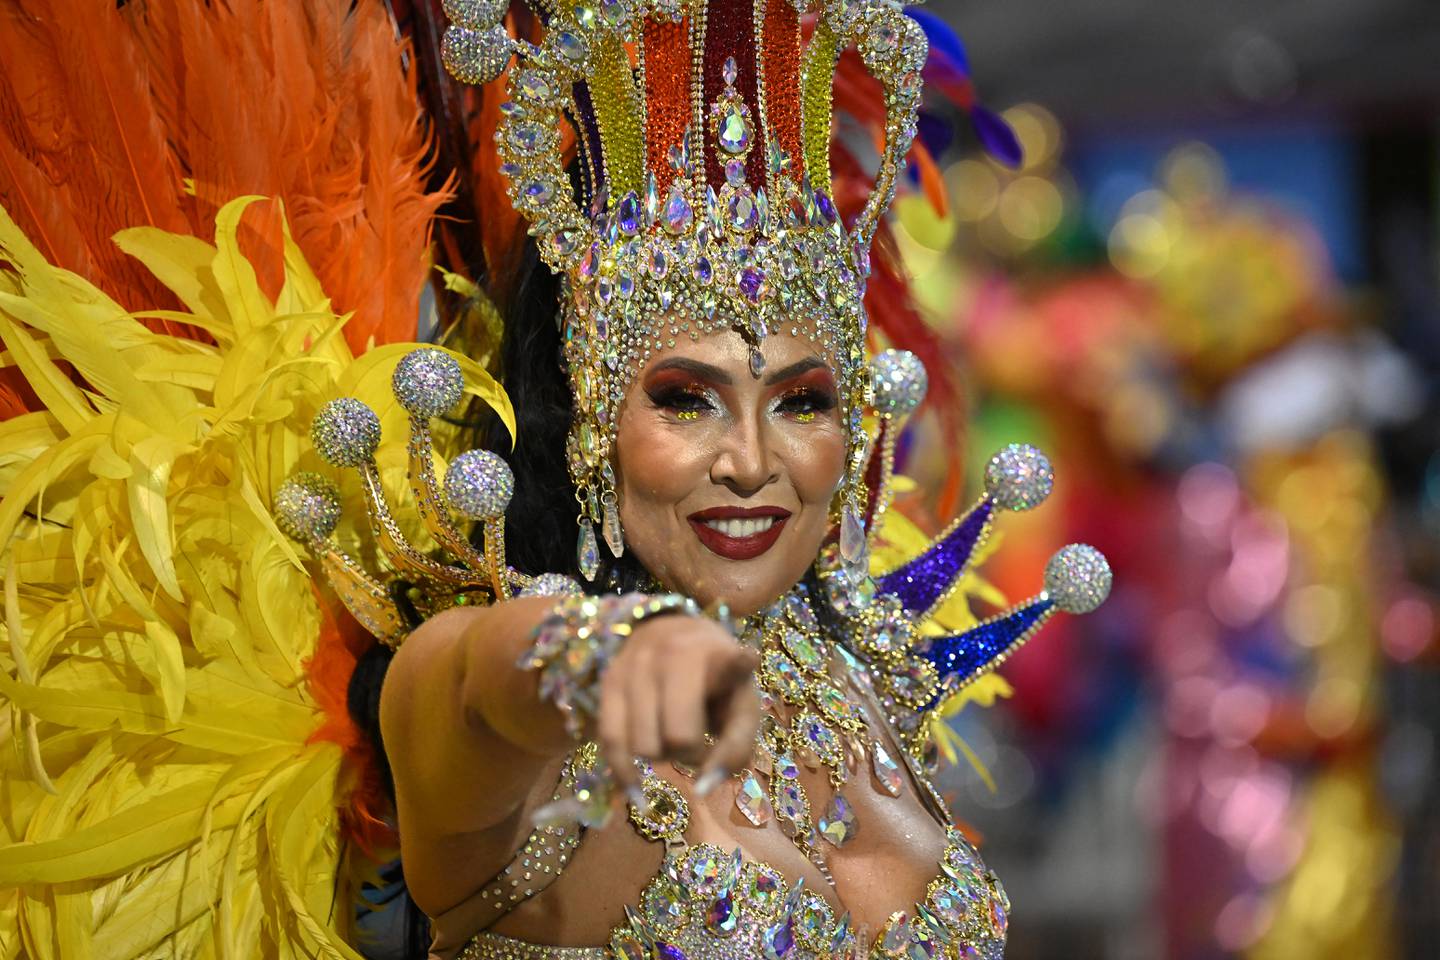 Una juerguista de la escuela de samba Aguia de Ouro viste su traje cargado de brillos y colores.